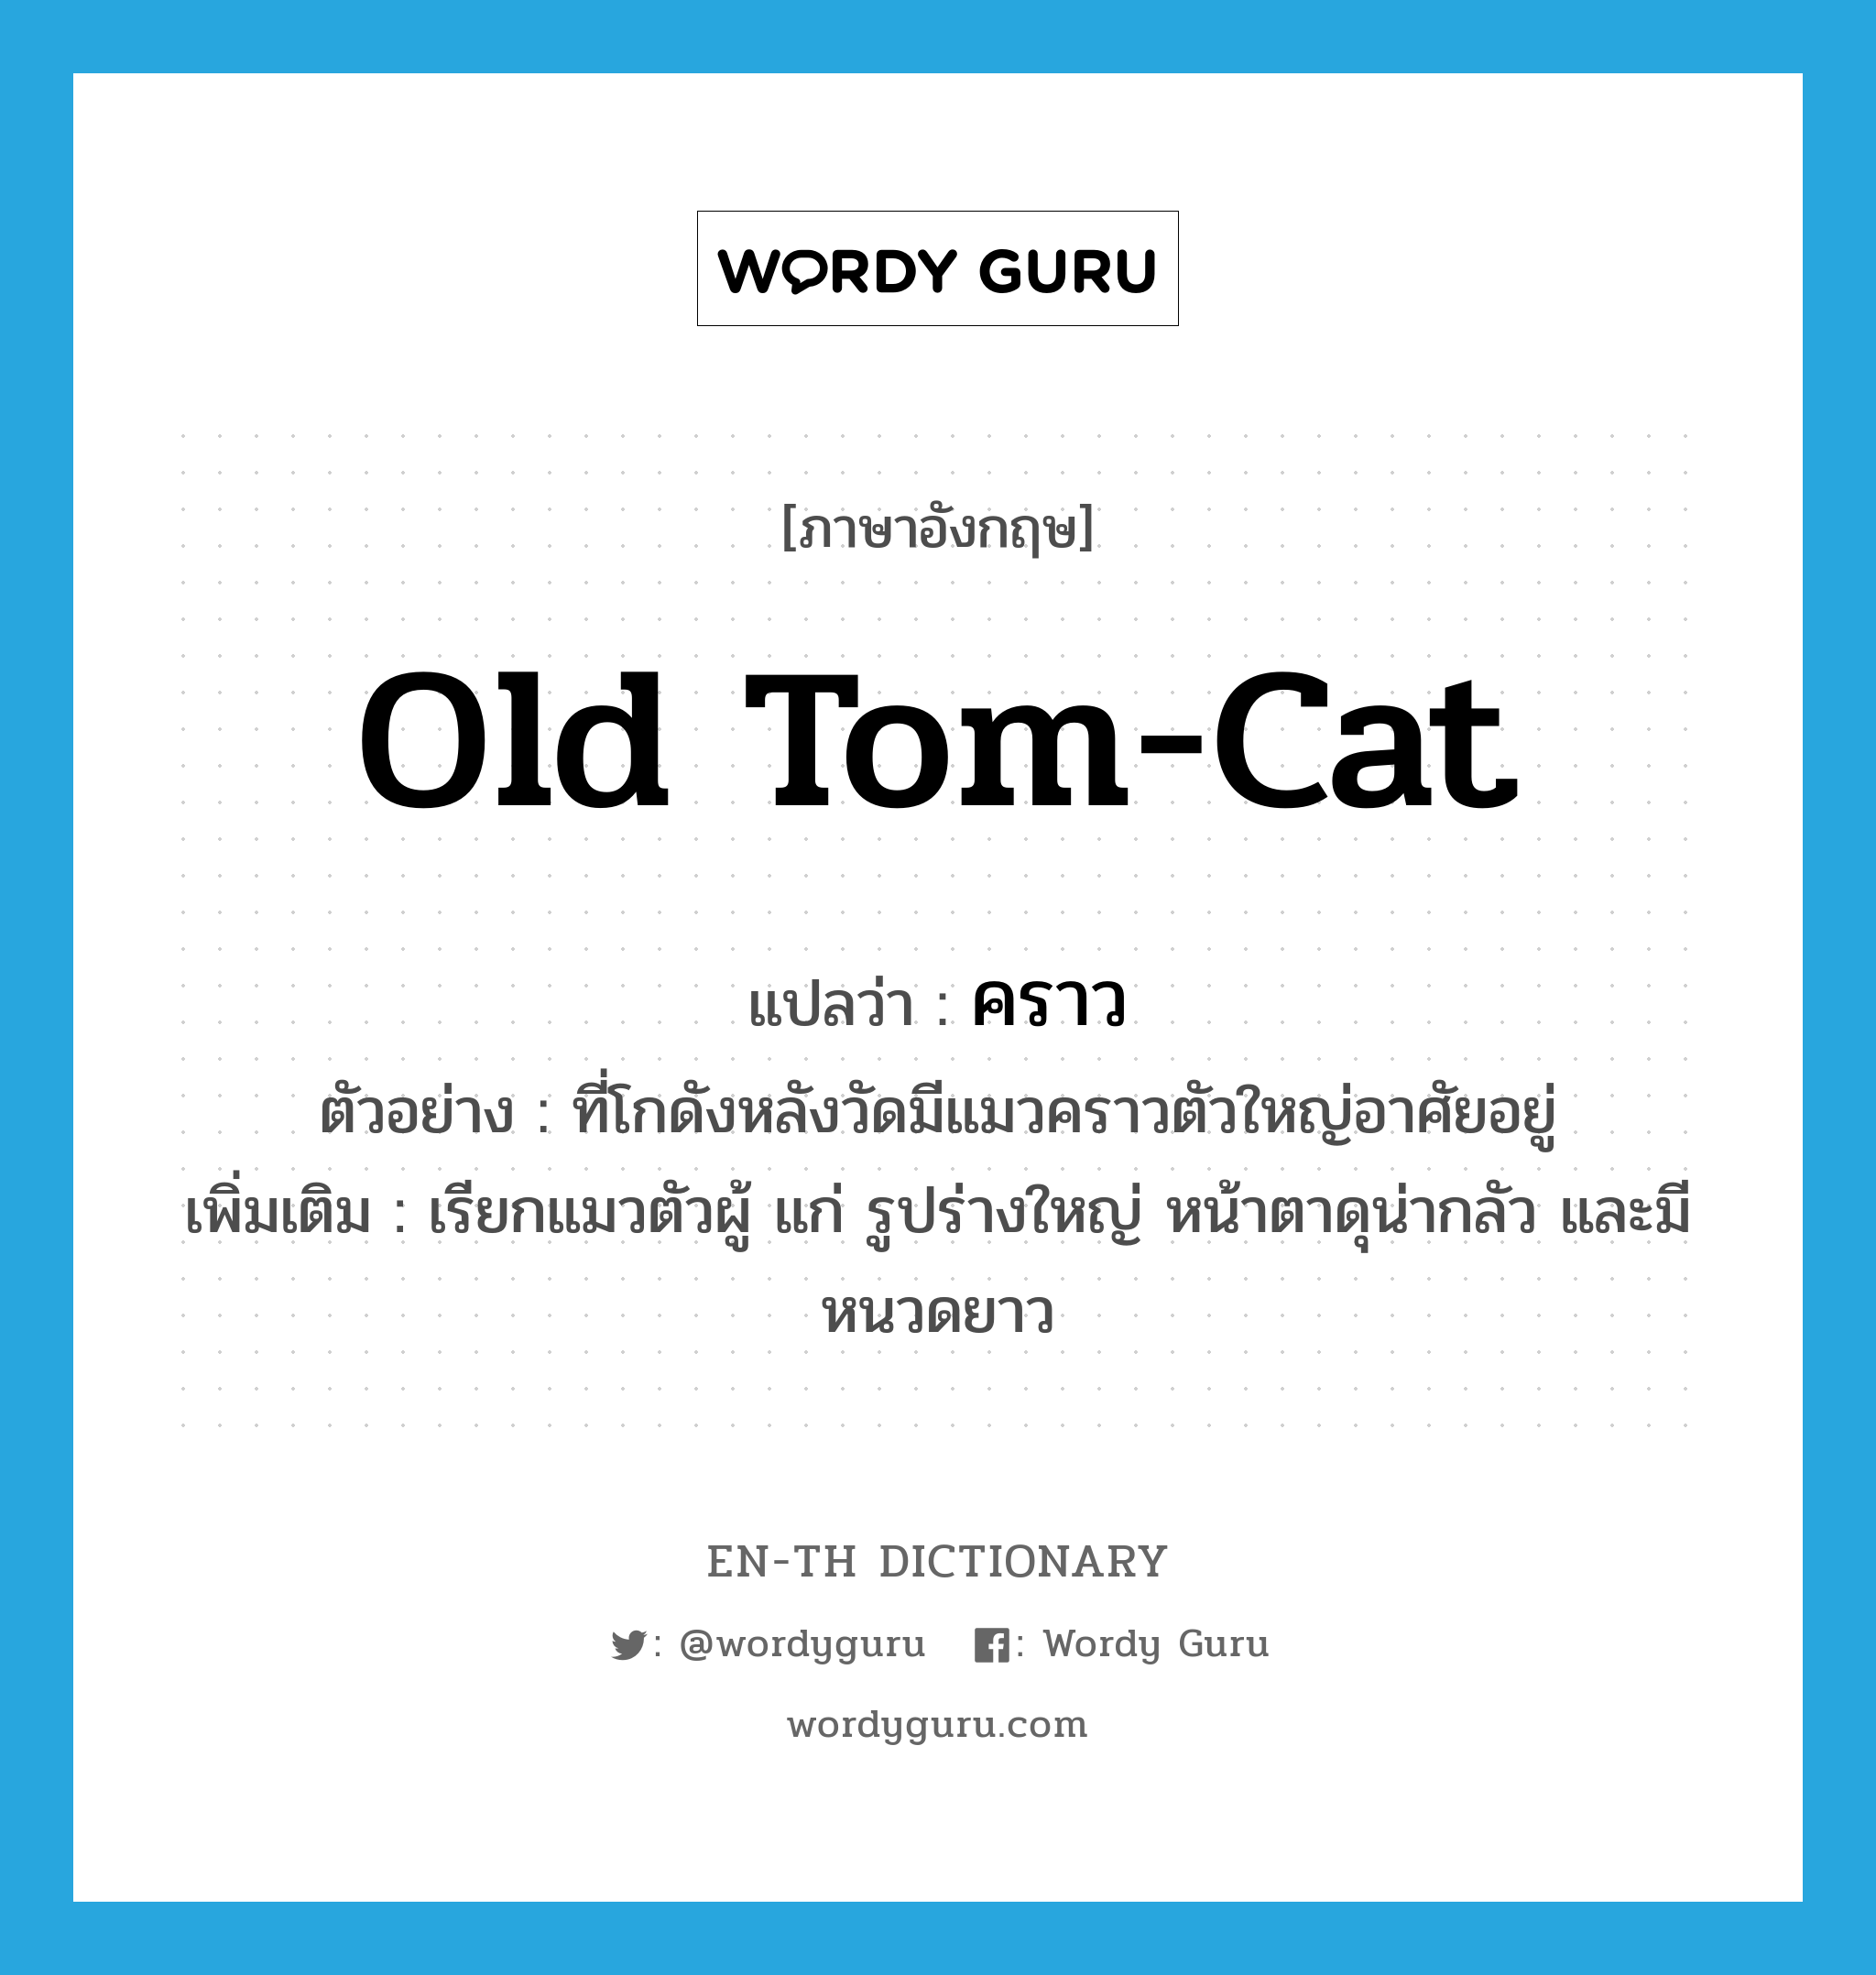 คราว ภาษาอังกฤษ?, คำศัพท์ภาษาอังกฤษ คราว แปลว่า old tom-cat ประเภท N ตัวอย่าง ที่โกดังหลังวัดมีแมวคราวตัวใหญ่อาศัยอยู่ เพิ่มเติม เรียกแมวตัวผู้ แก่ รูปร่างใหญ่ หน้าตาดุน่ากลัว และมีหนวดยาว หมวด N